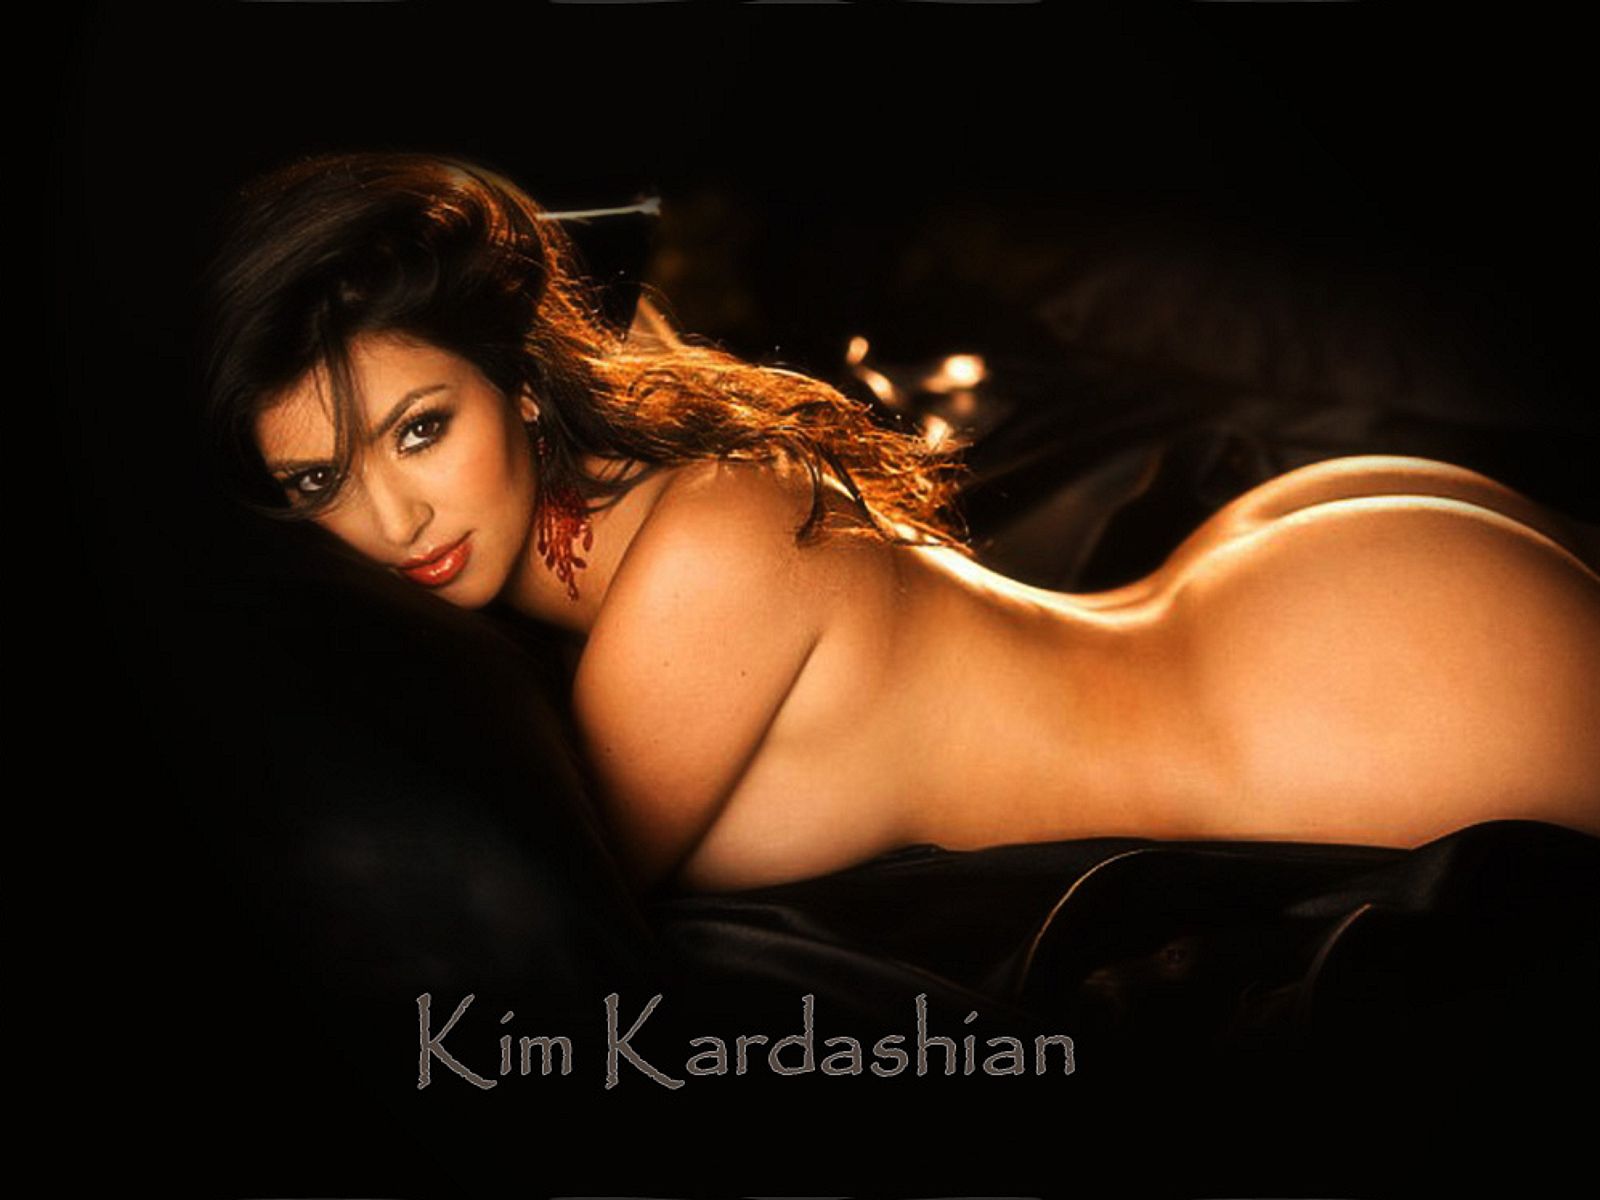 Кимберли «Ким» Кардашян Хамфрис (Kimberly «Kim» Kardashian Humphries)  фон знаменитости на рабочий стол